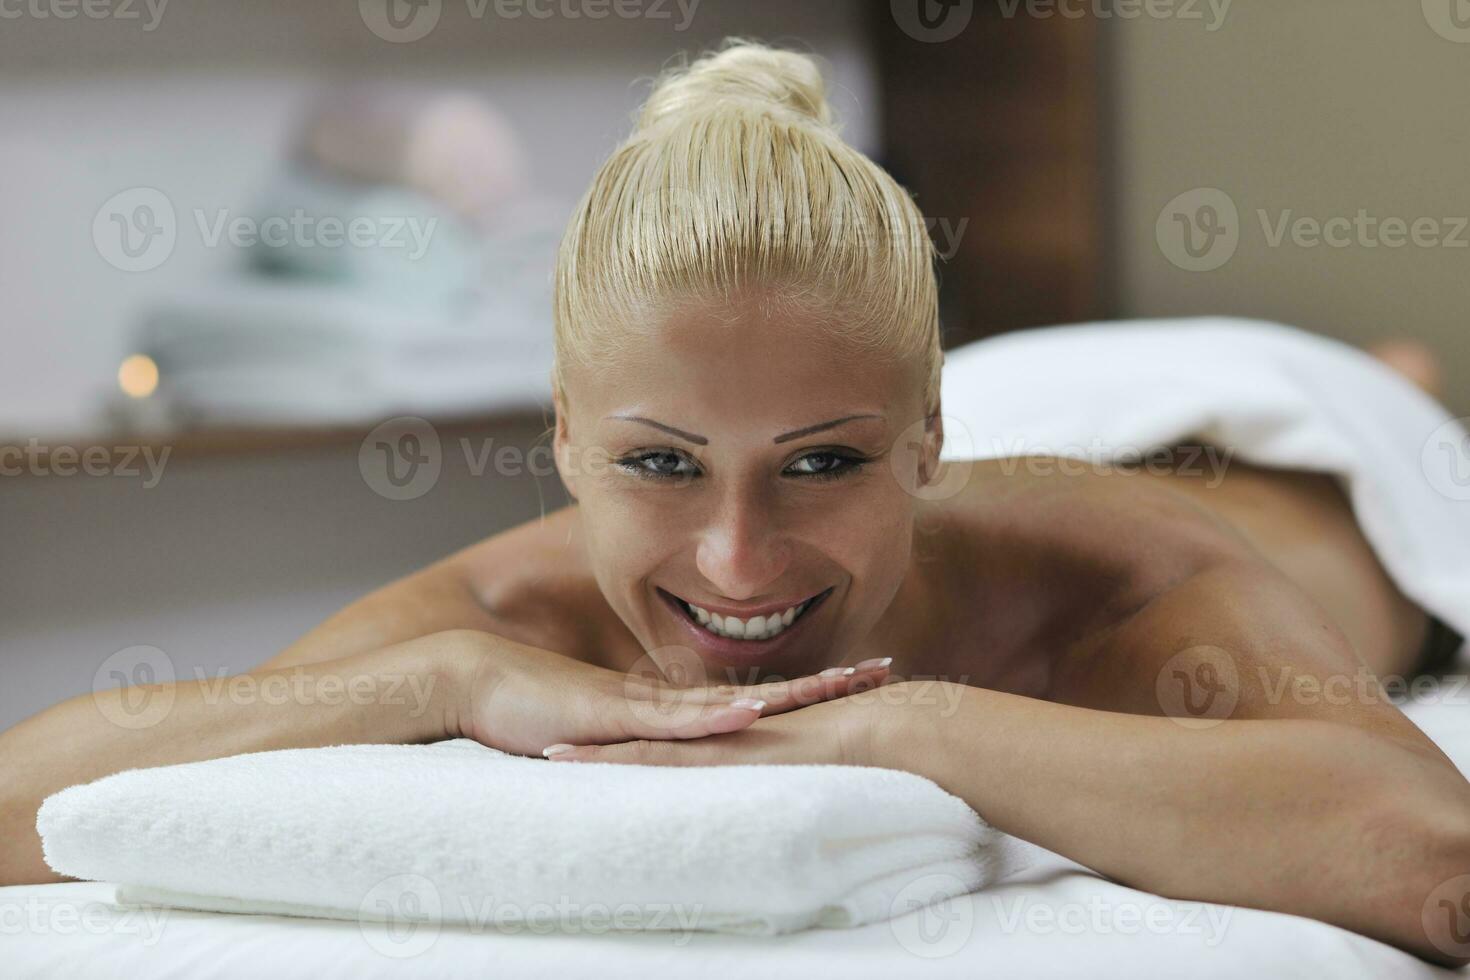 woman back massage treatment photo